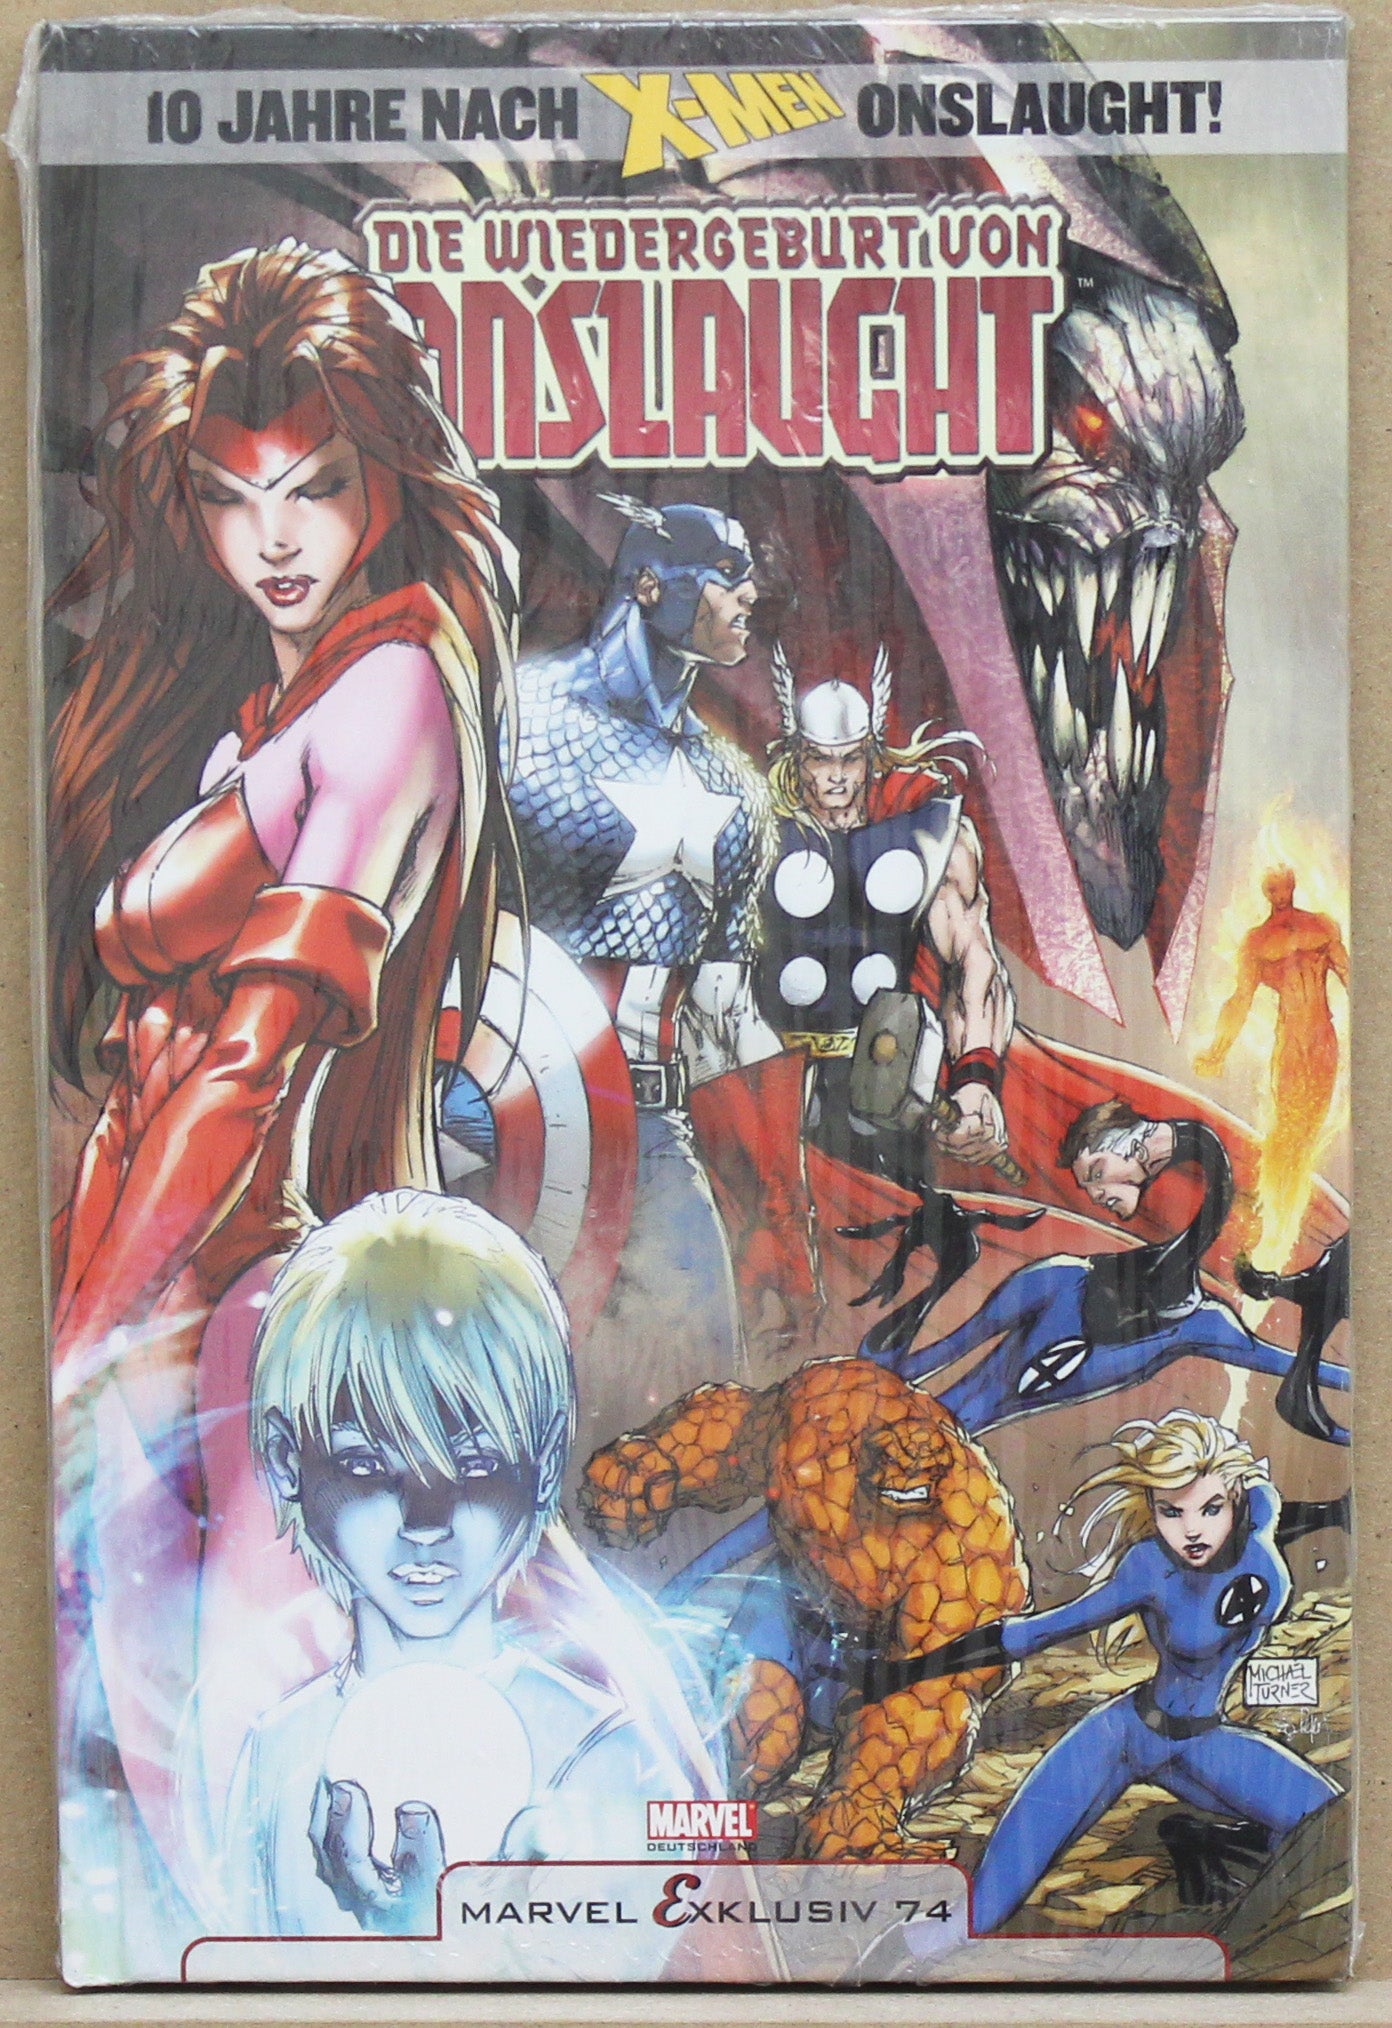 Die Wiedergeburt von Onslaught - Marvel Exklusiv HC 74